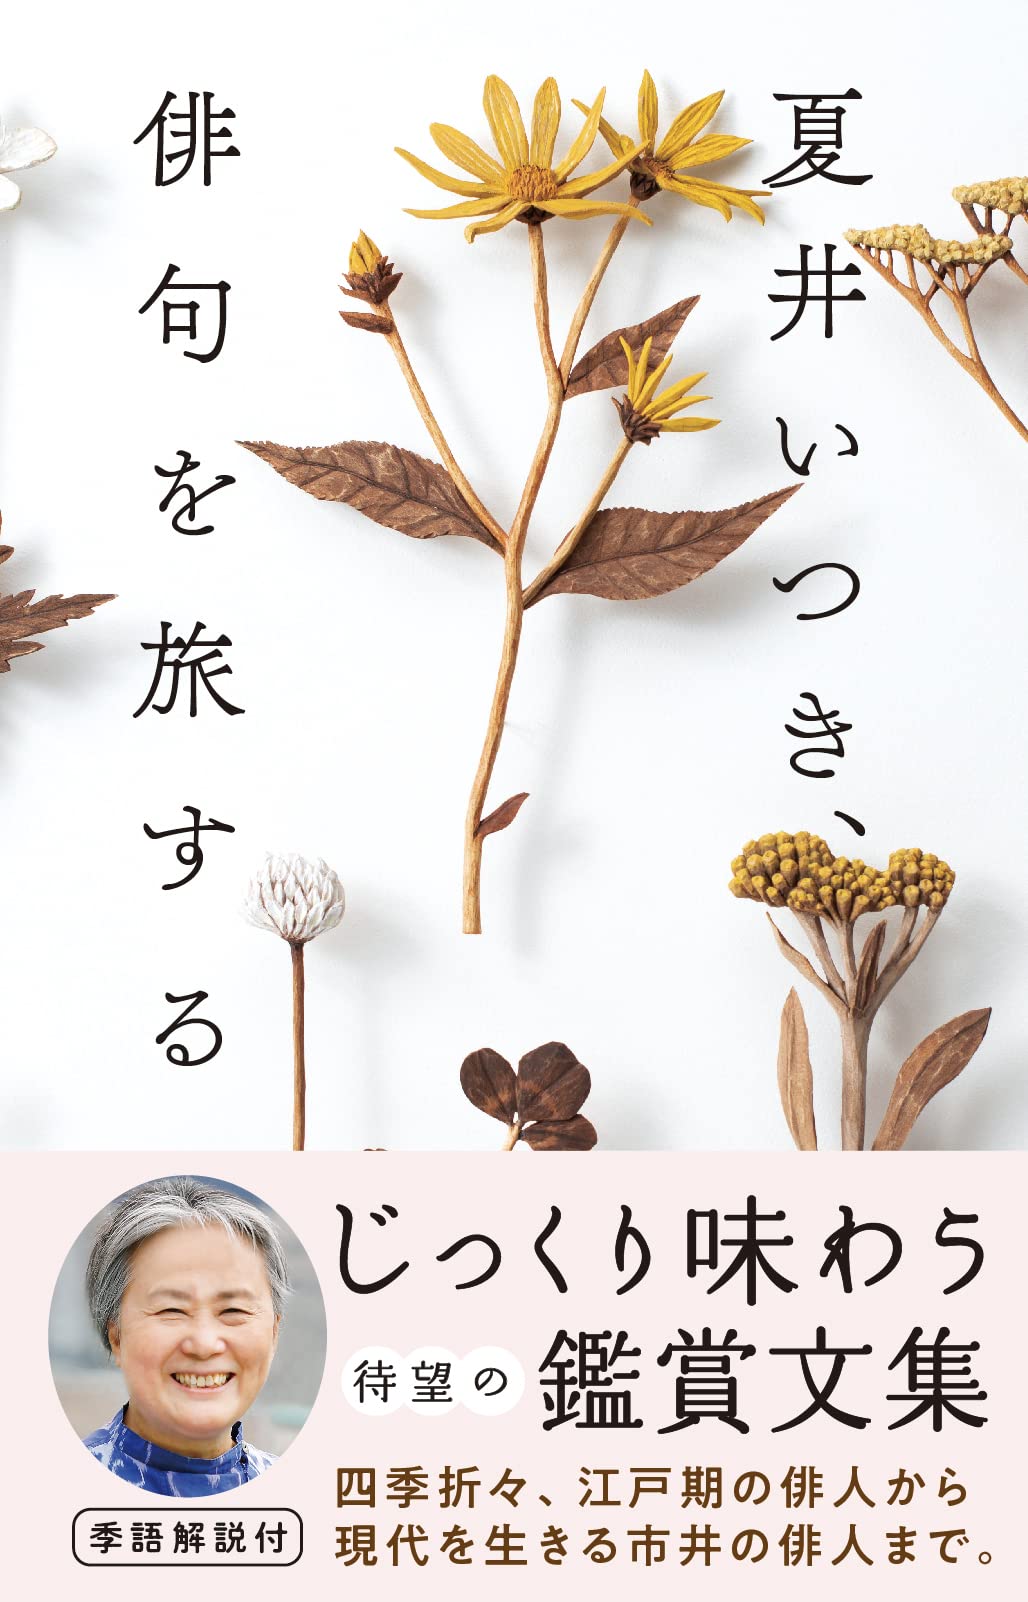 俳人 夏井いつきの最新刊『夏井いつき、俳句を旅する』4月1日発売